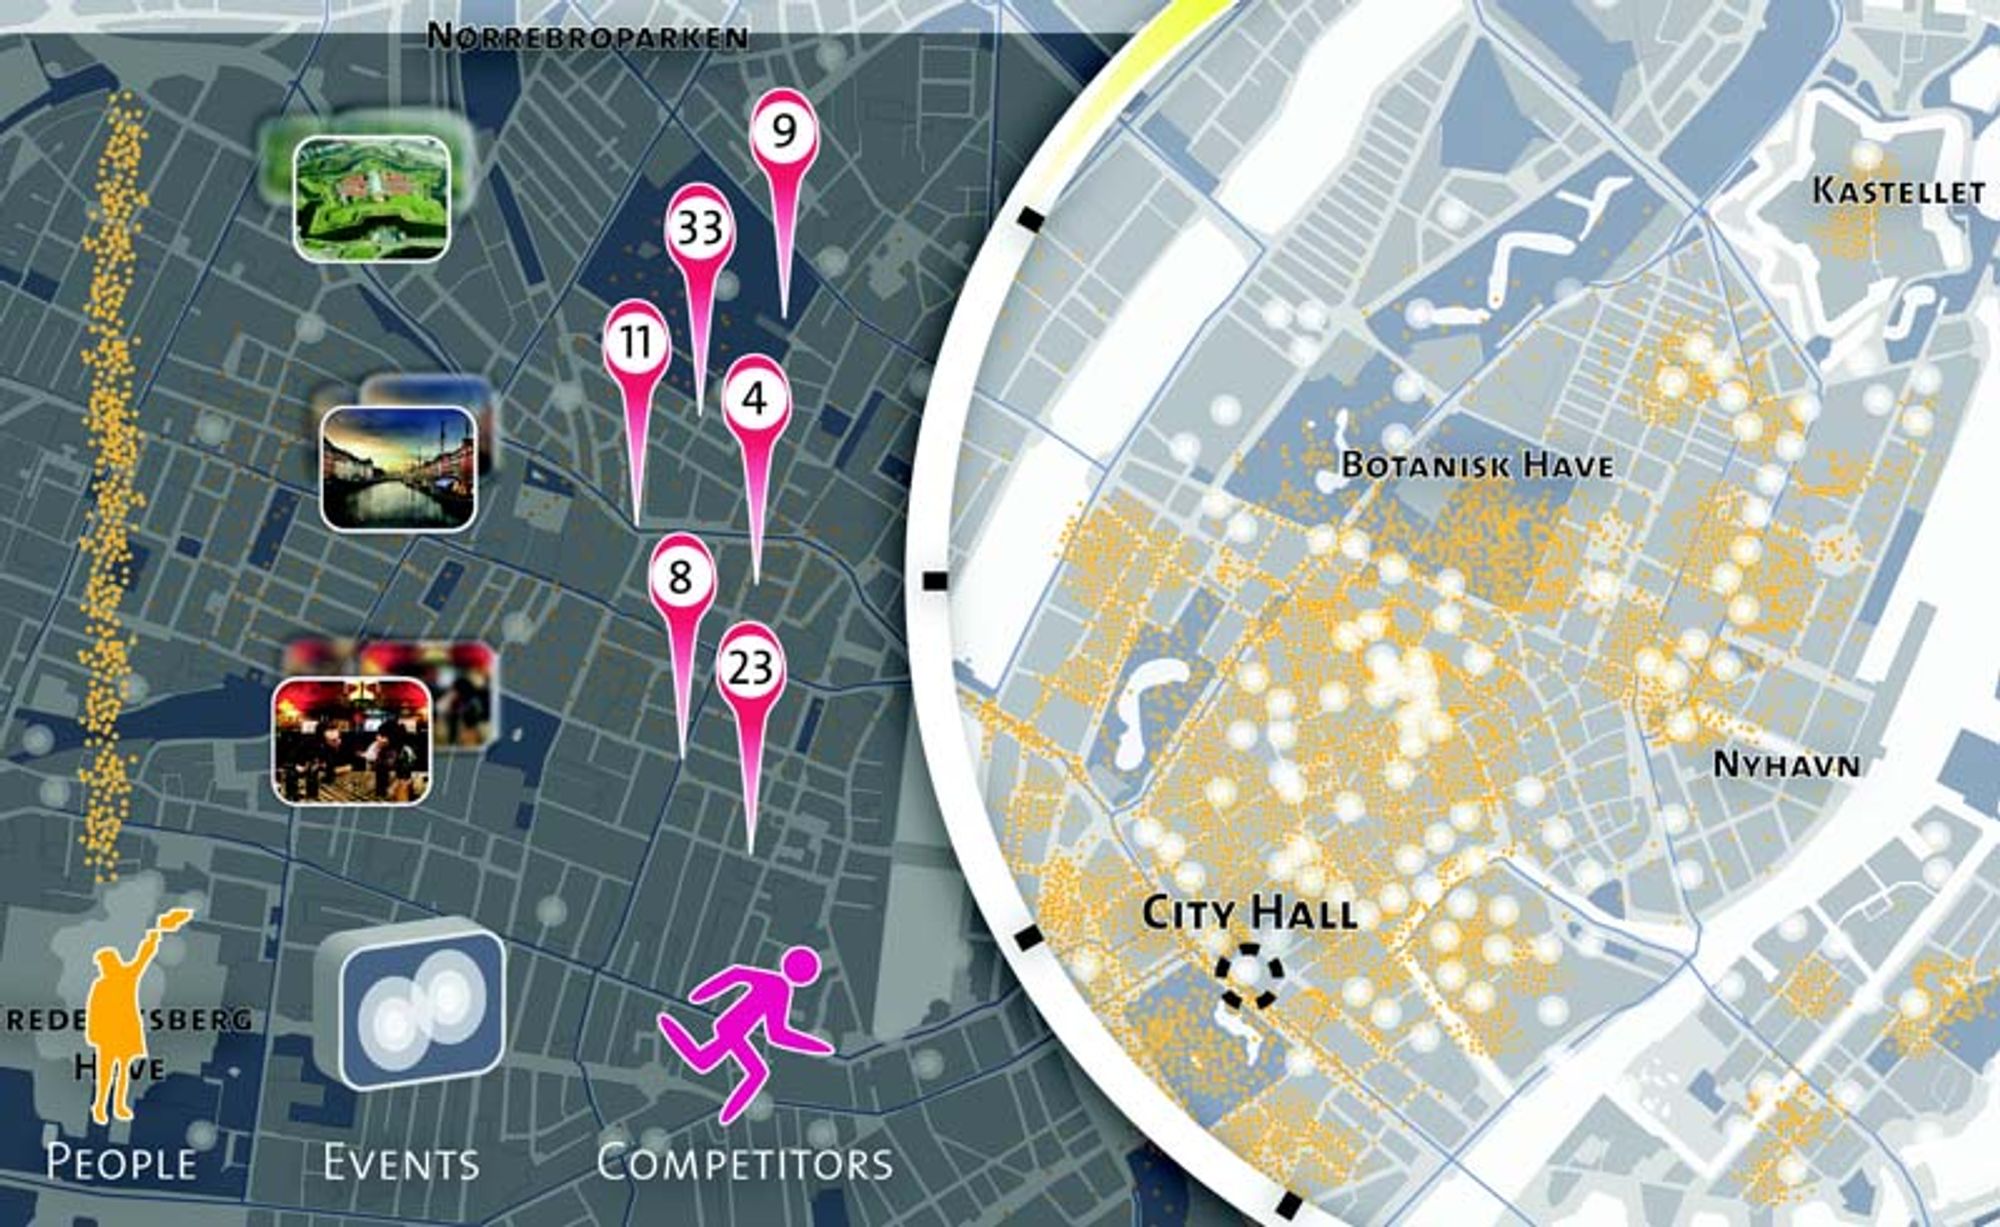 Københavnerne kartlegges av mobilnettet